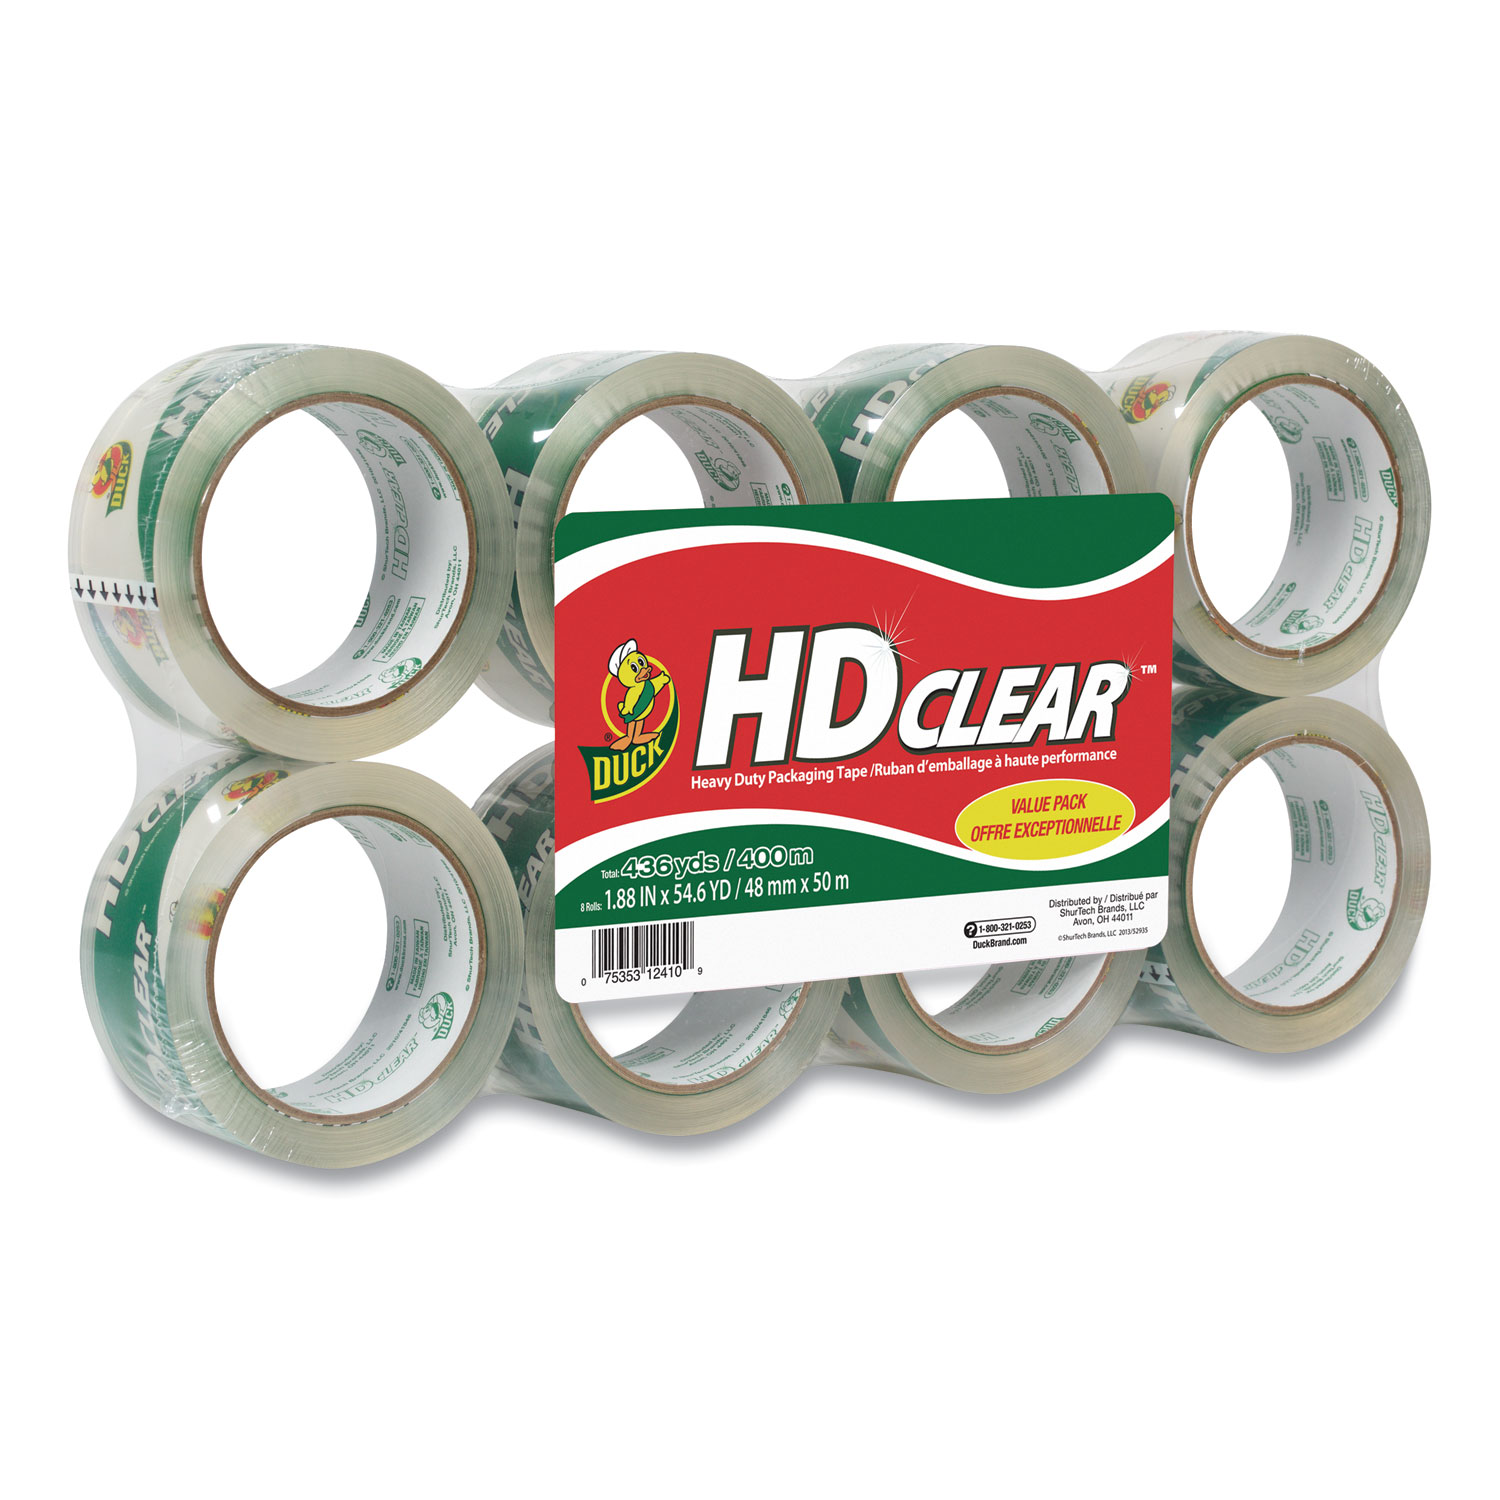 Duck HD Clear Heavy Duty Packaging Tape, 1.88 inch x 109 yds., Clear